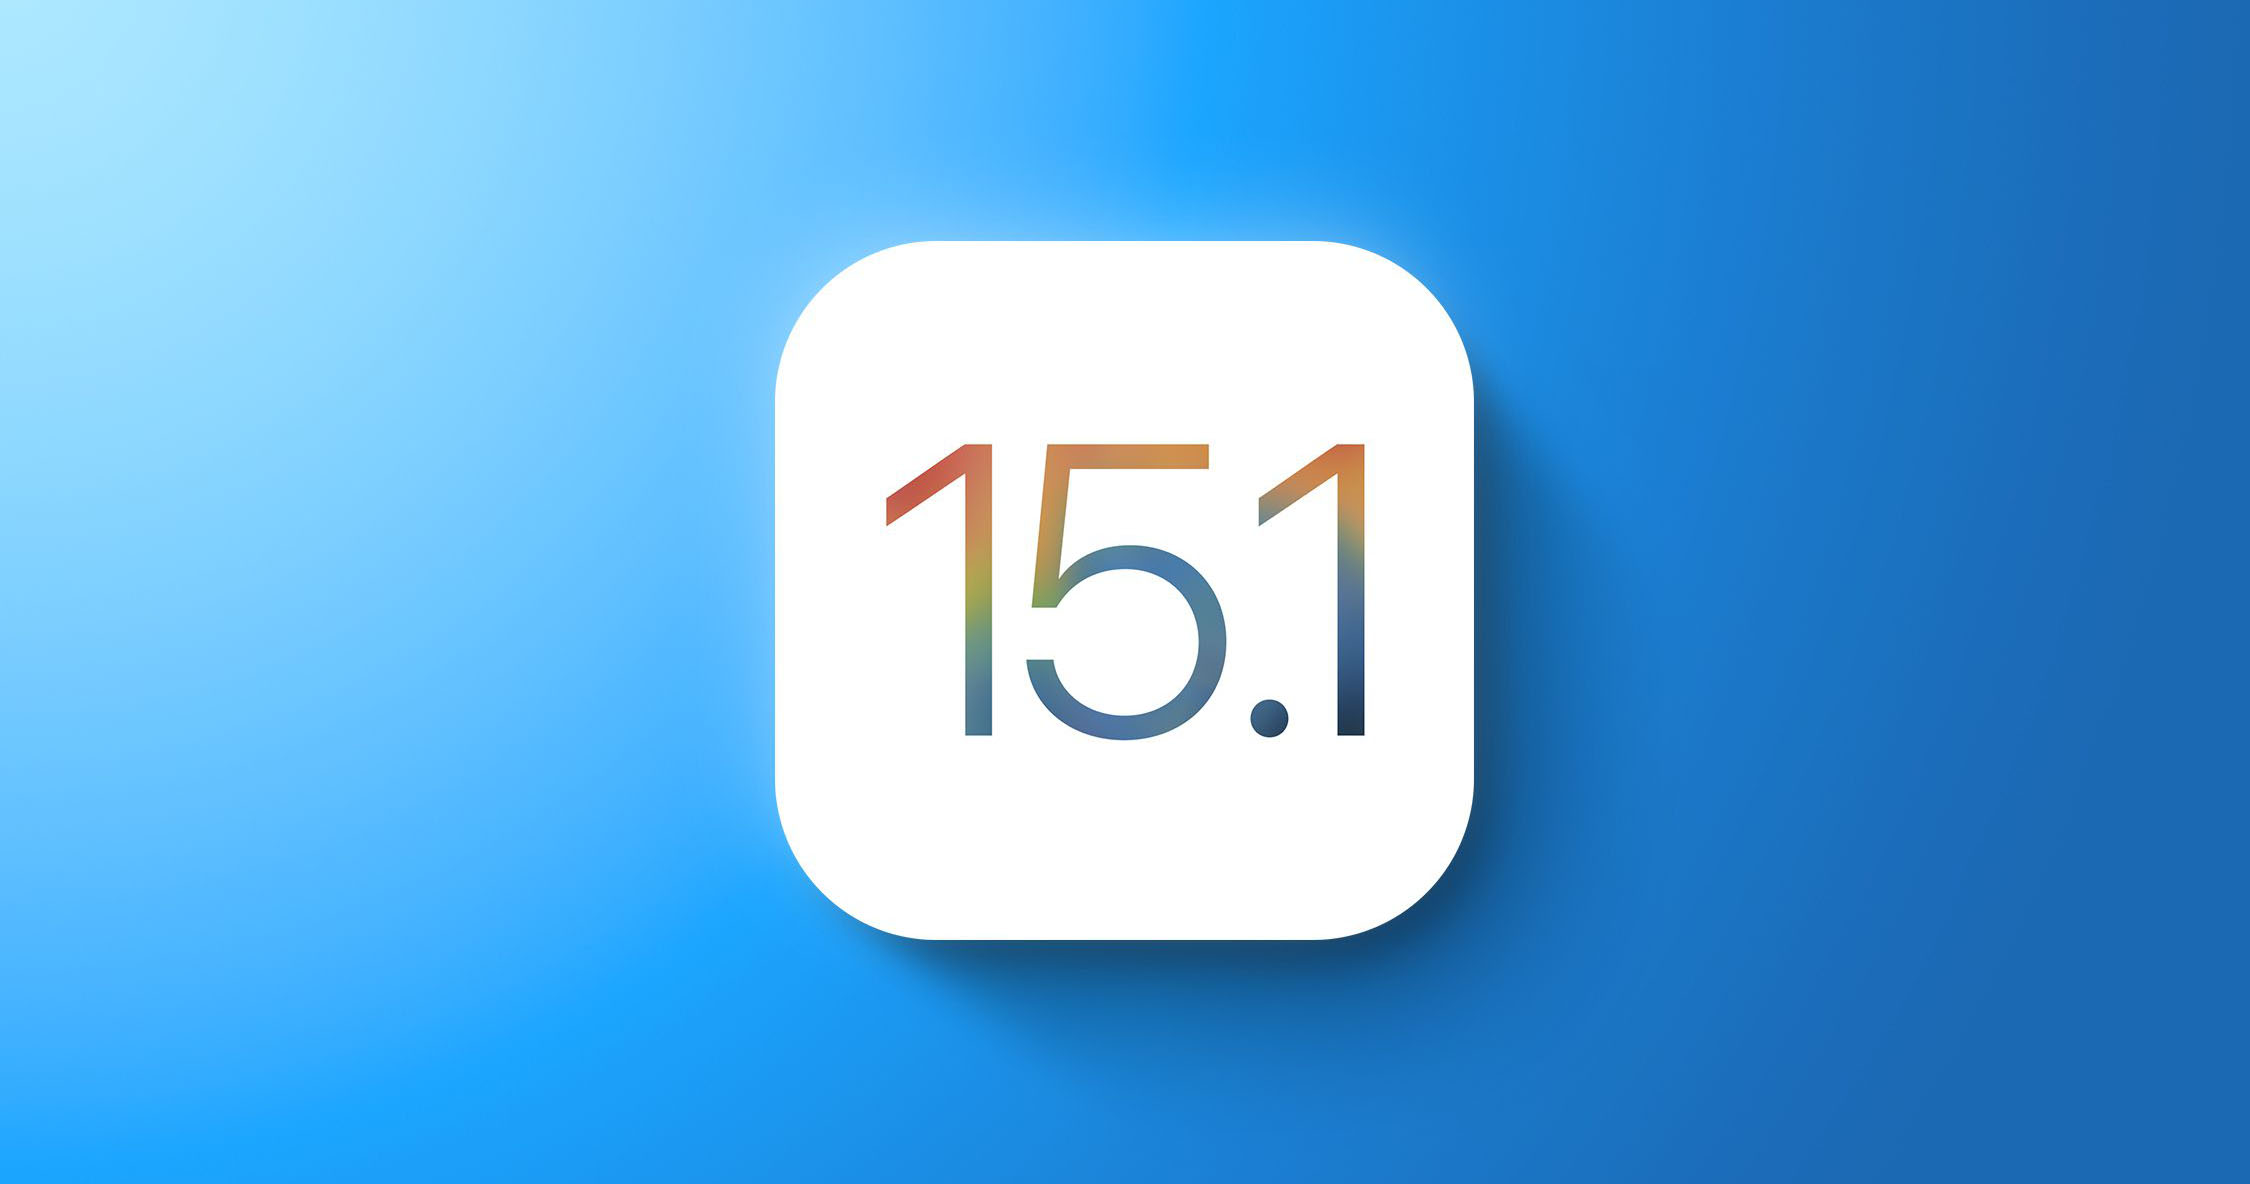 Sforum - Trang thông tin công nghệ mới nhất iOS-15-1-beta-3-face Apple phát hành bản cập nhật iOS 15.1 và iPadOS 15.1 beta 3 để bổ sung vài tính năng mới, mời bạn cập nhật 